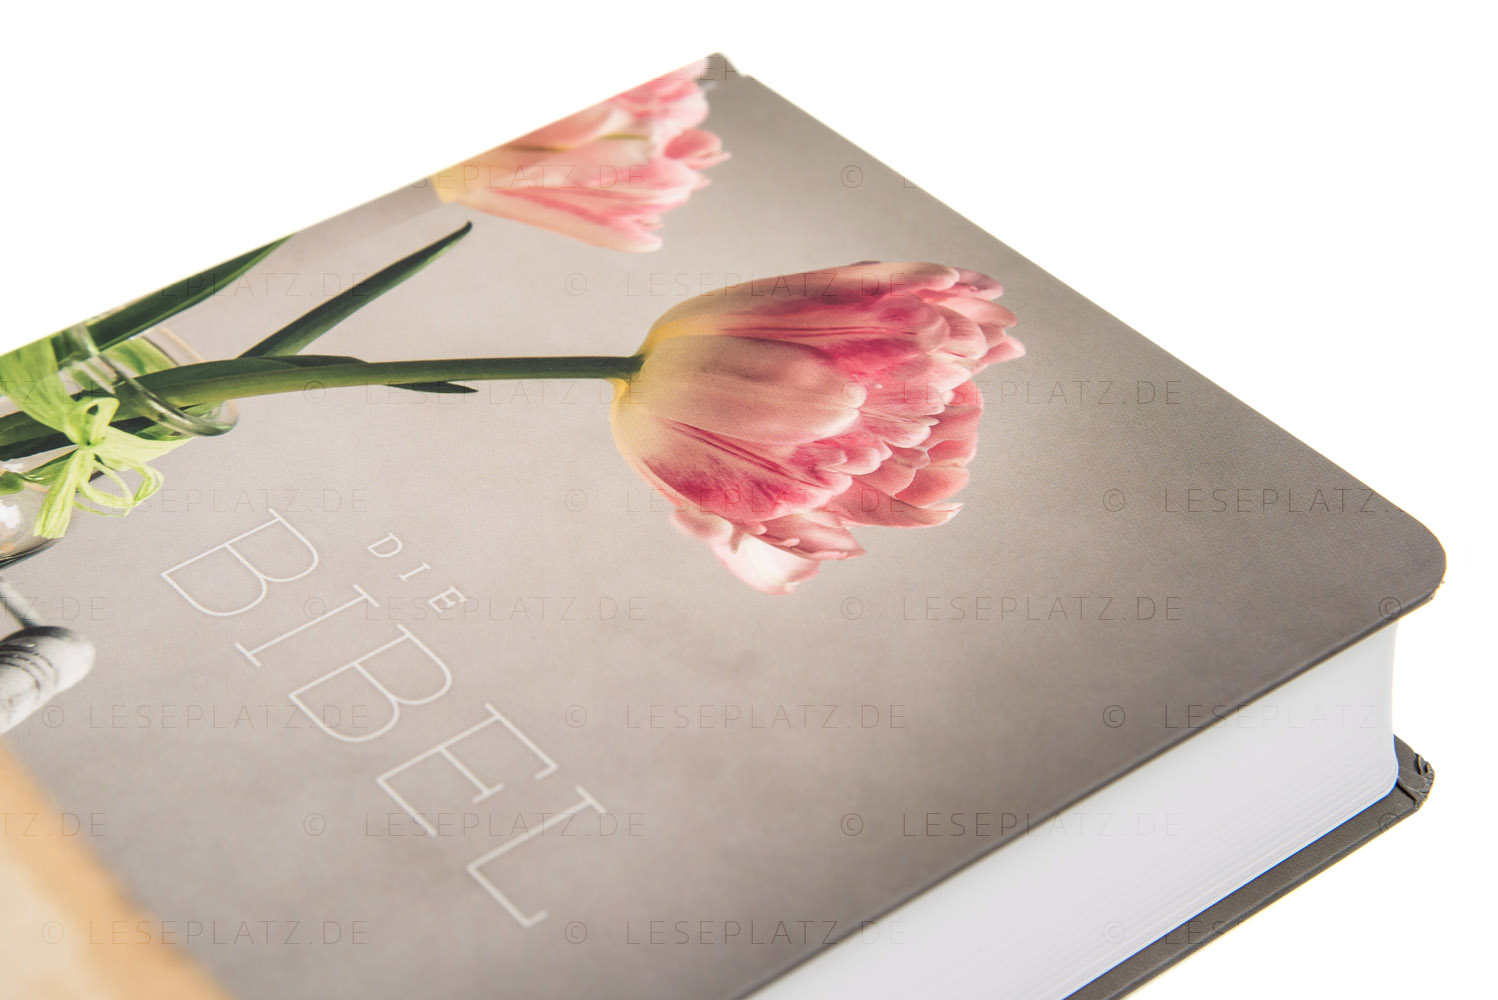 Schlachter 2000 Taschenausgabe - Hardcover "Blüten"